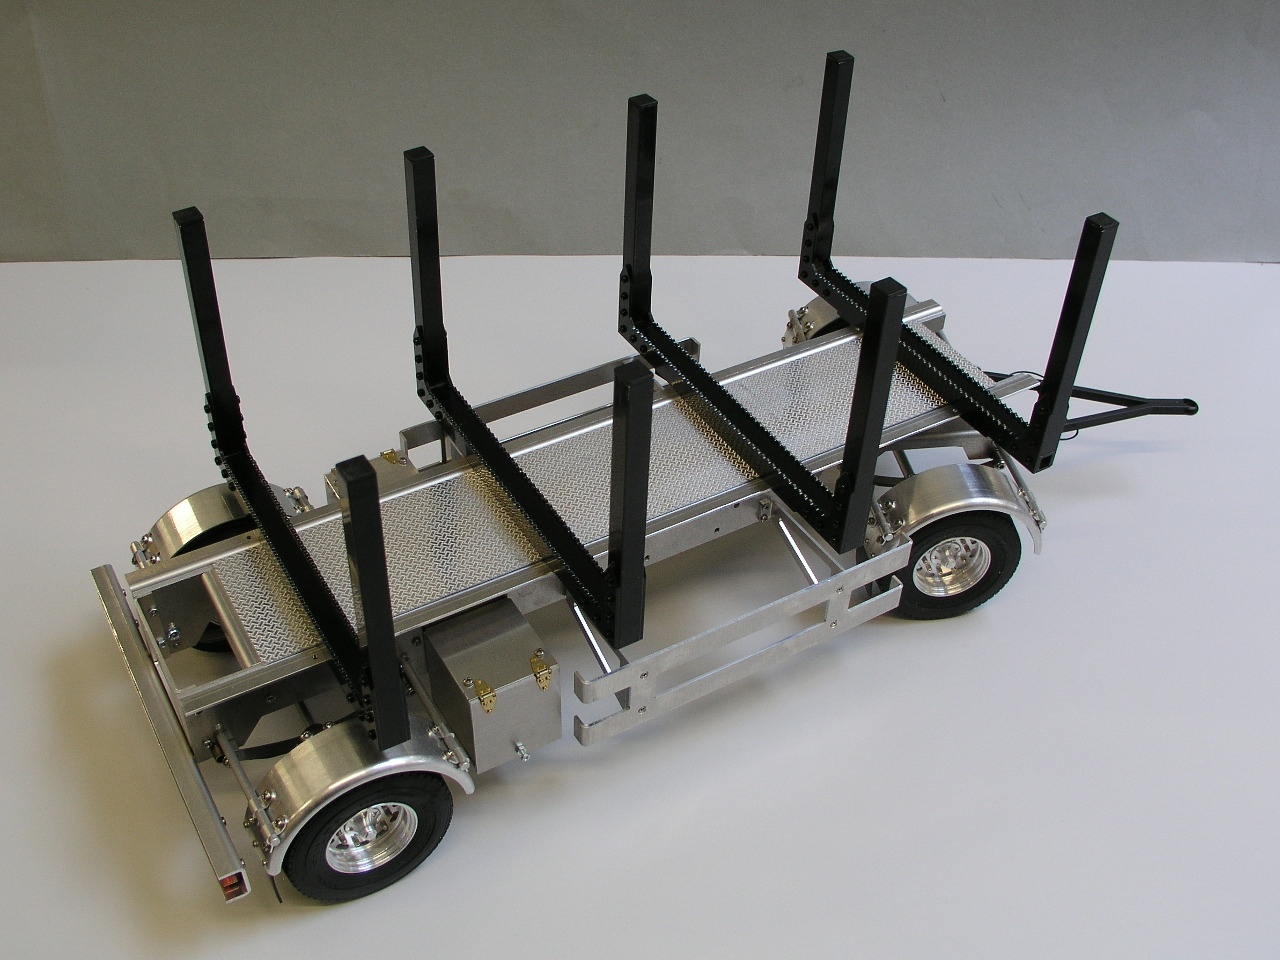 SALUTUYA Look Coole kleine Anhänger Metall Modell RC Anhänger RC Modell für  1/10 RC Truck : : Spielzeug